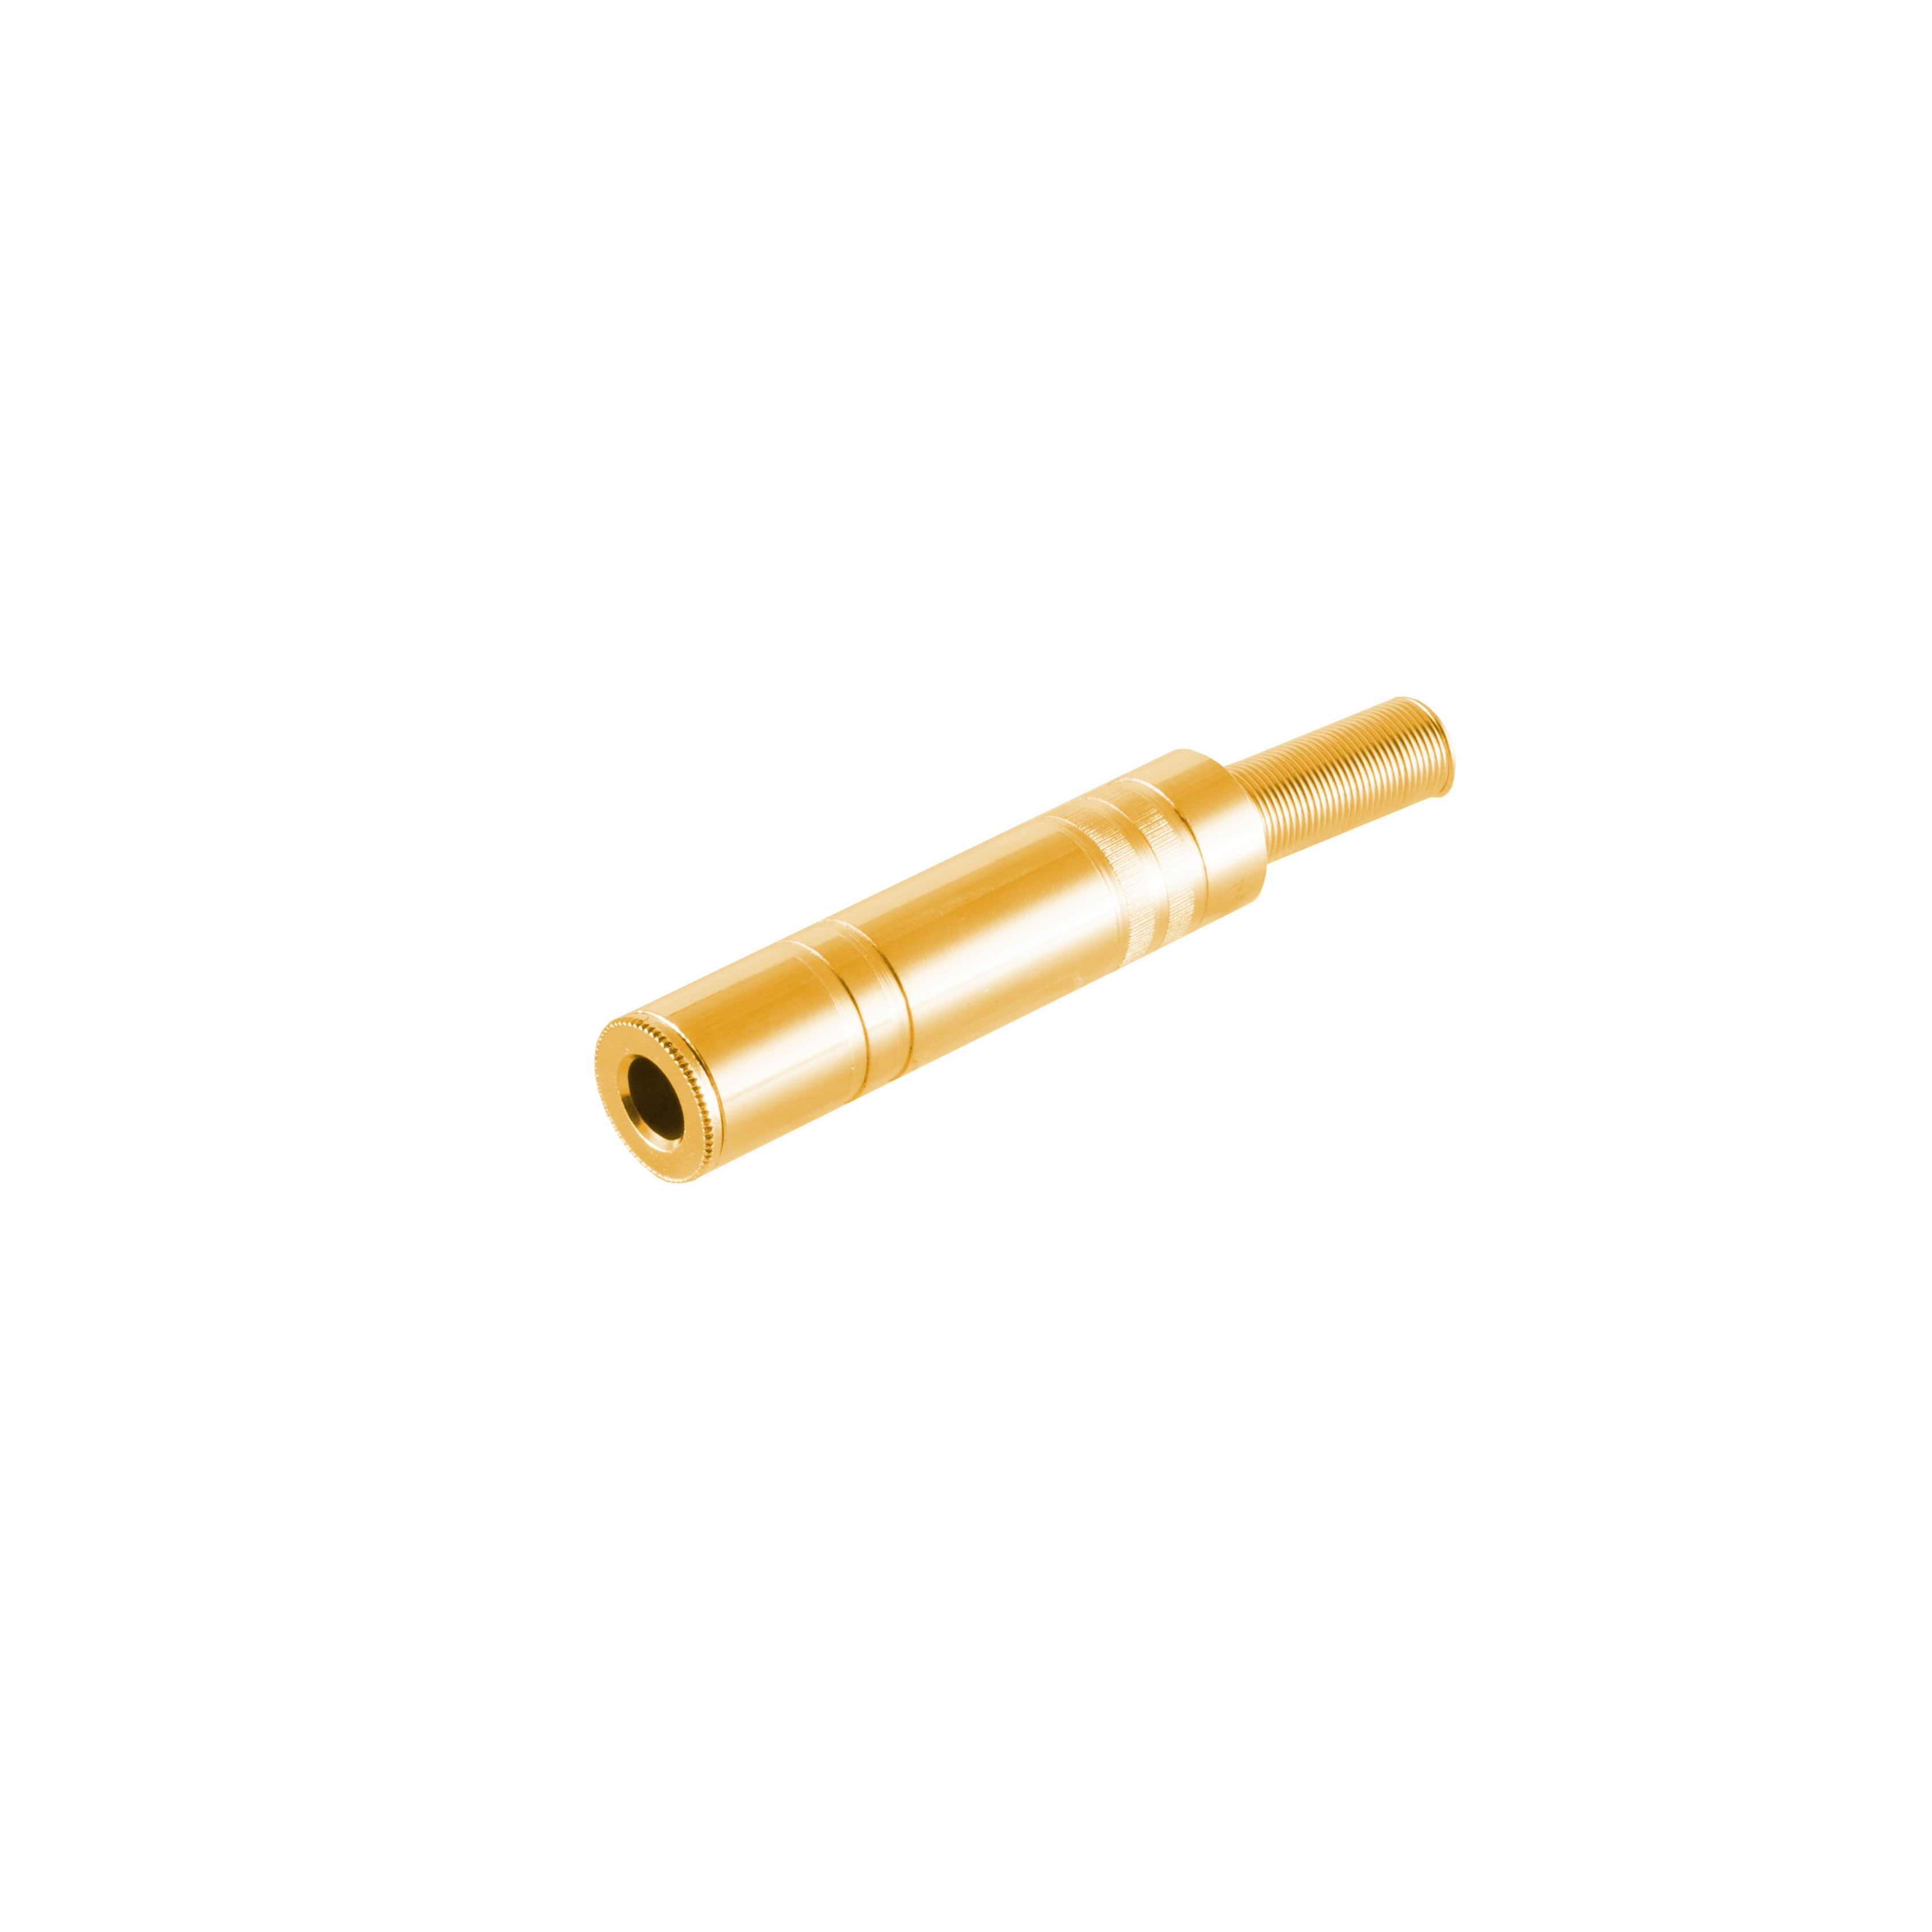 KABELBUDE Klinkenkupplung Stereo 6,3mm, vergoldet Klinke Metall